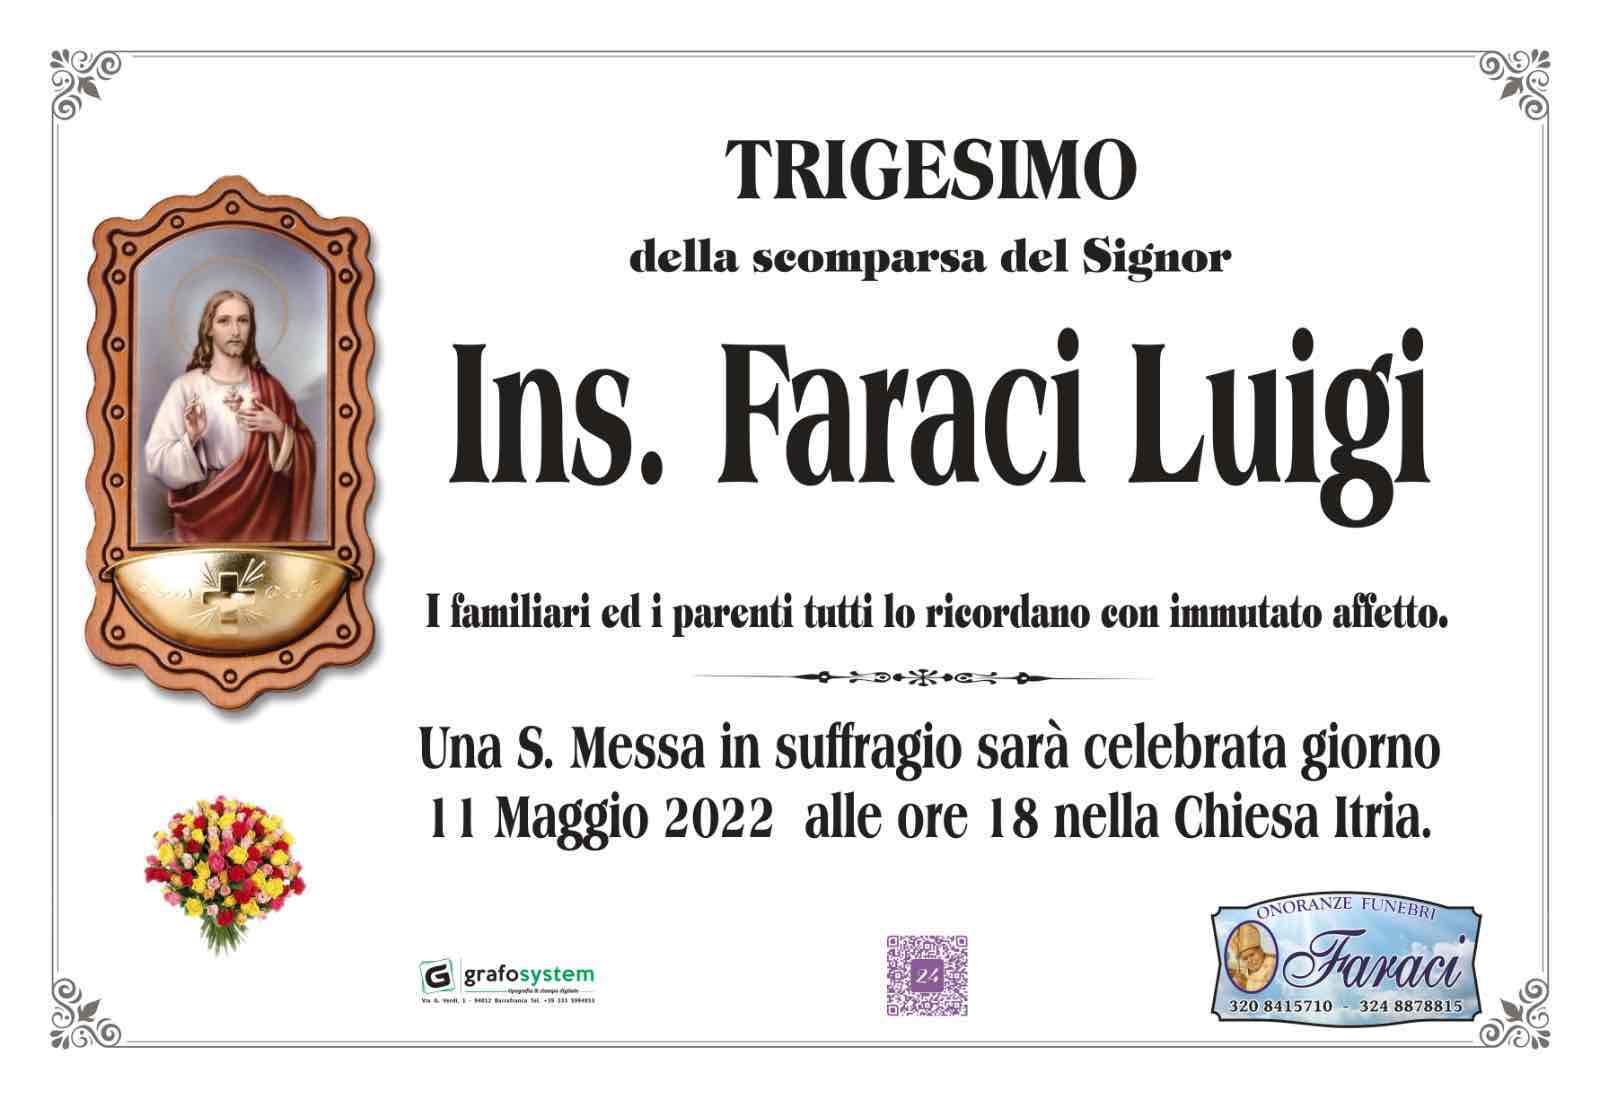 Luigi Faraci